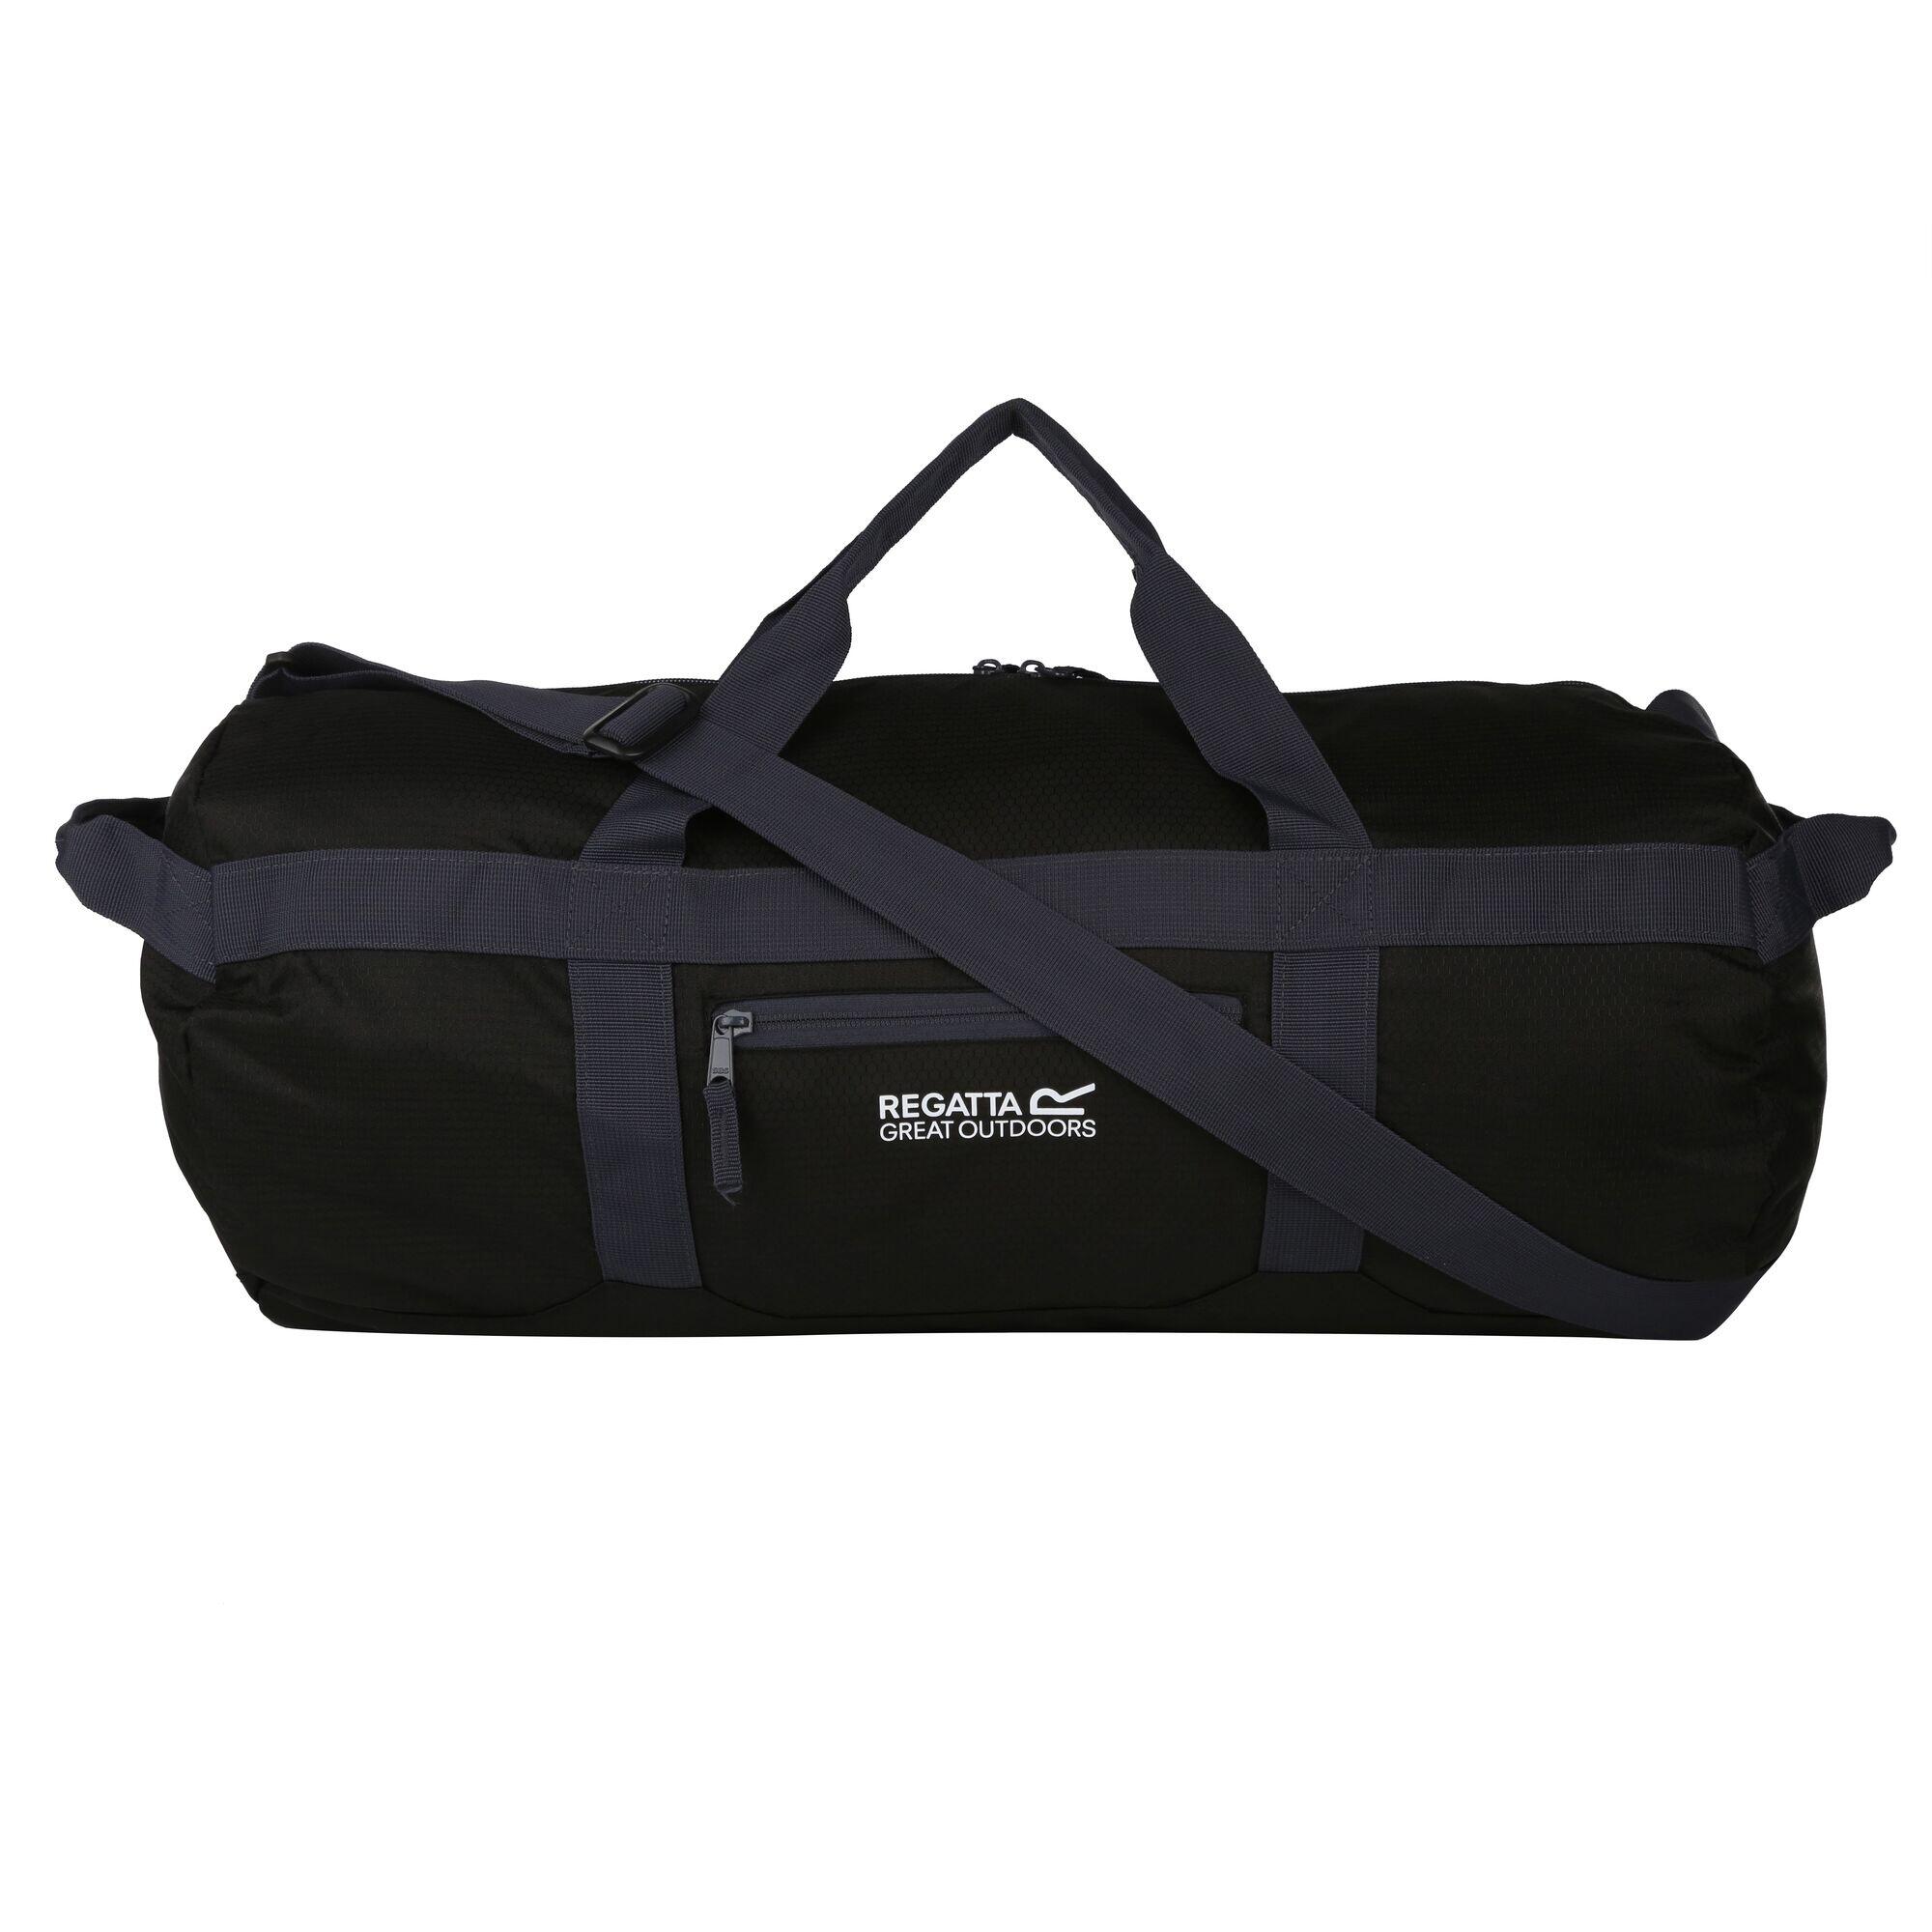 REGATTA Packaway 60L Adults' Unisex Fitness Duffle Bag - Black